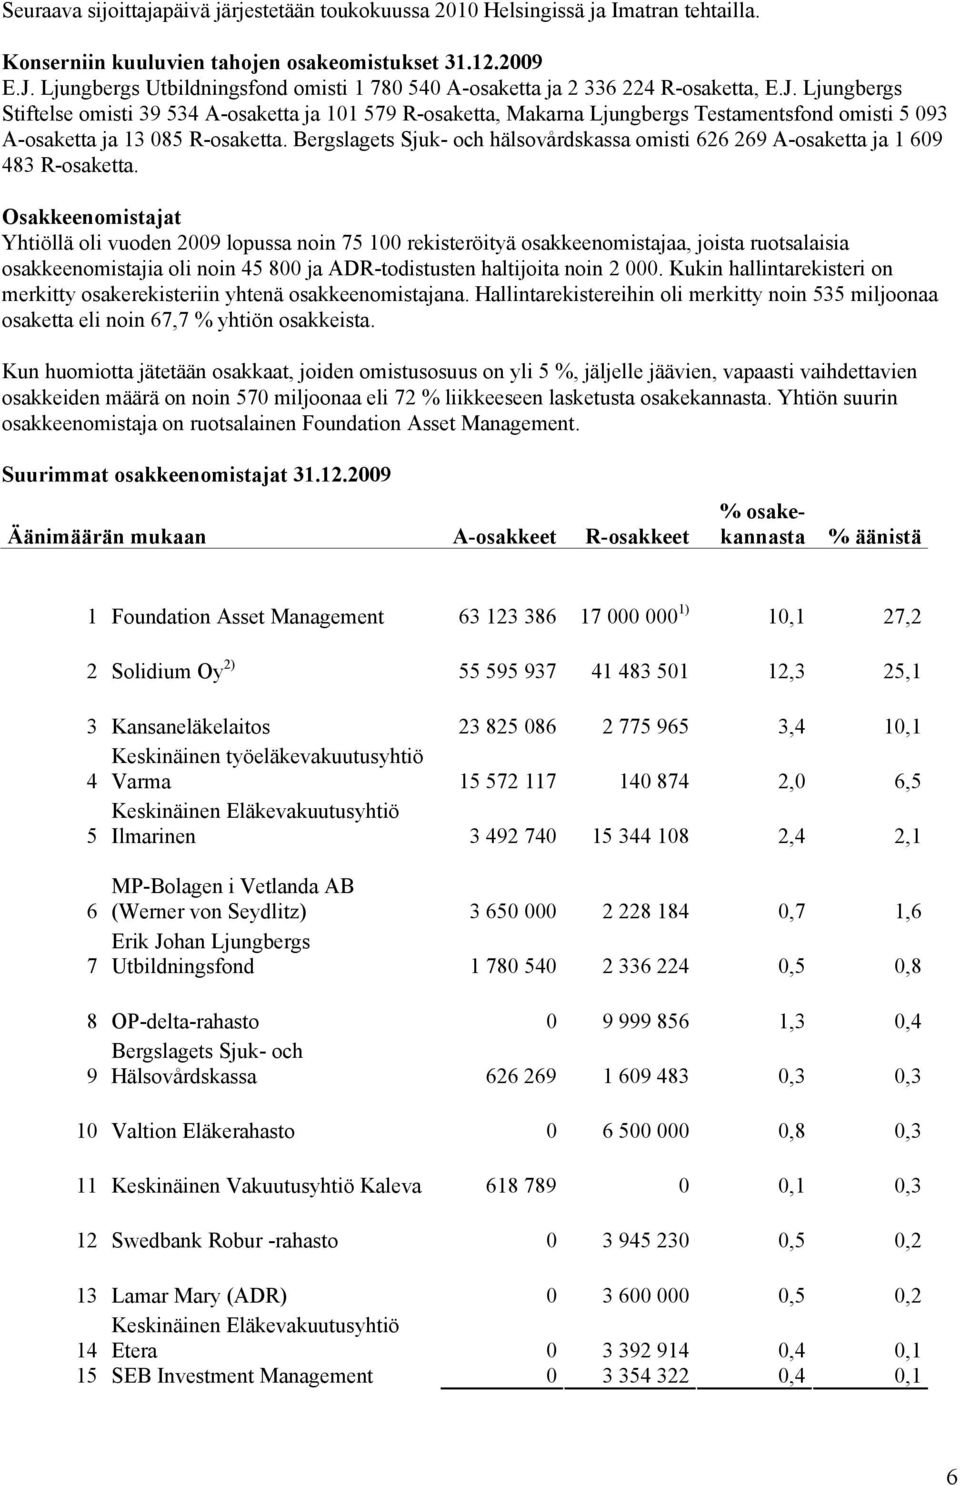 Ljungbergs Stiftelse omisti 39 534 A-osaketta ja 101 579 R-osaketta, Makarna Ljungbergs Testamentsfond omisti 5 093 A-osaketta ja 13 085 R-osaketta.